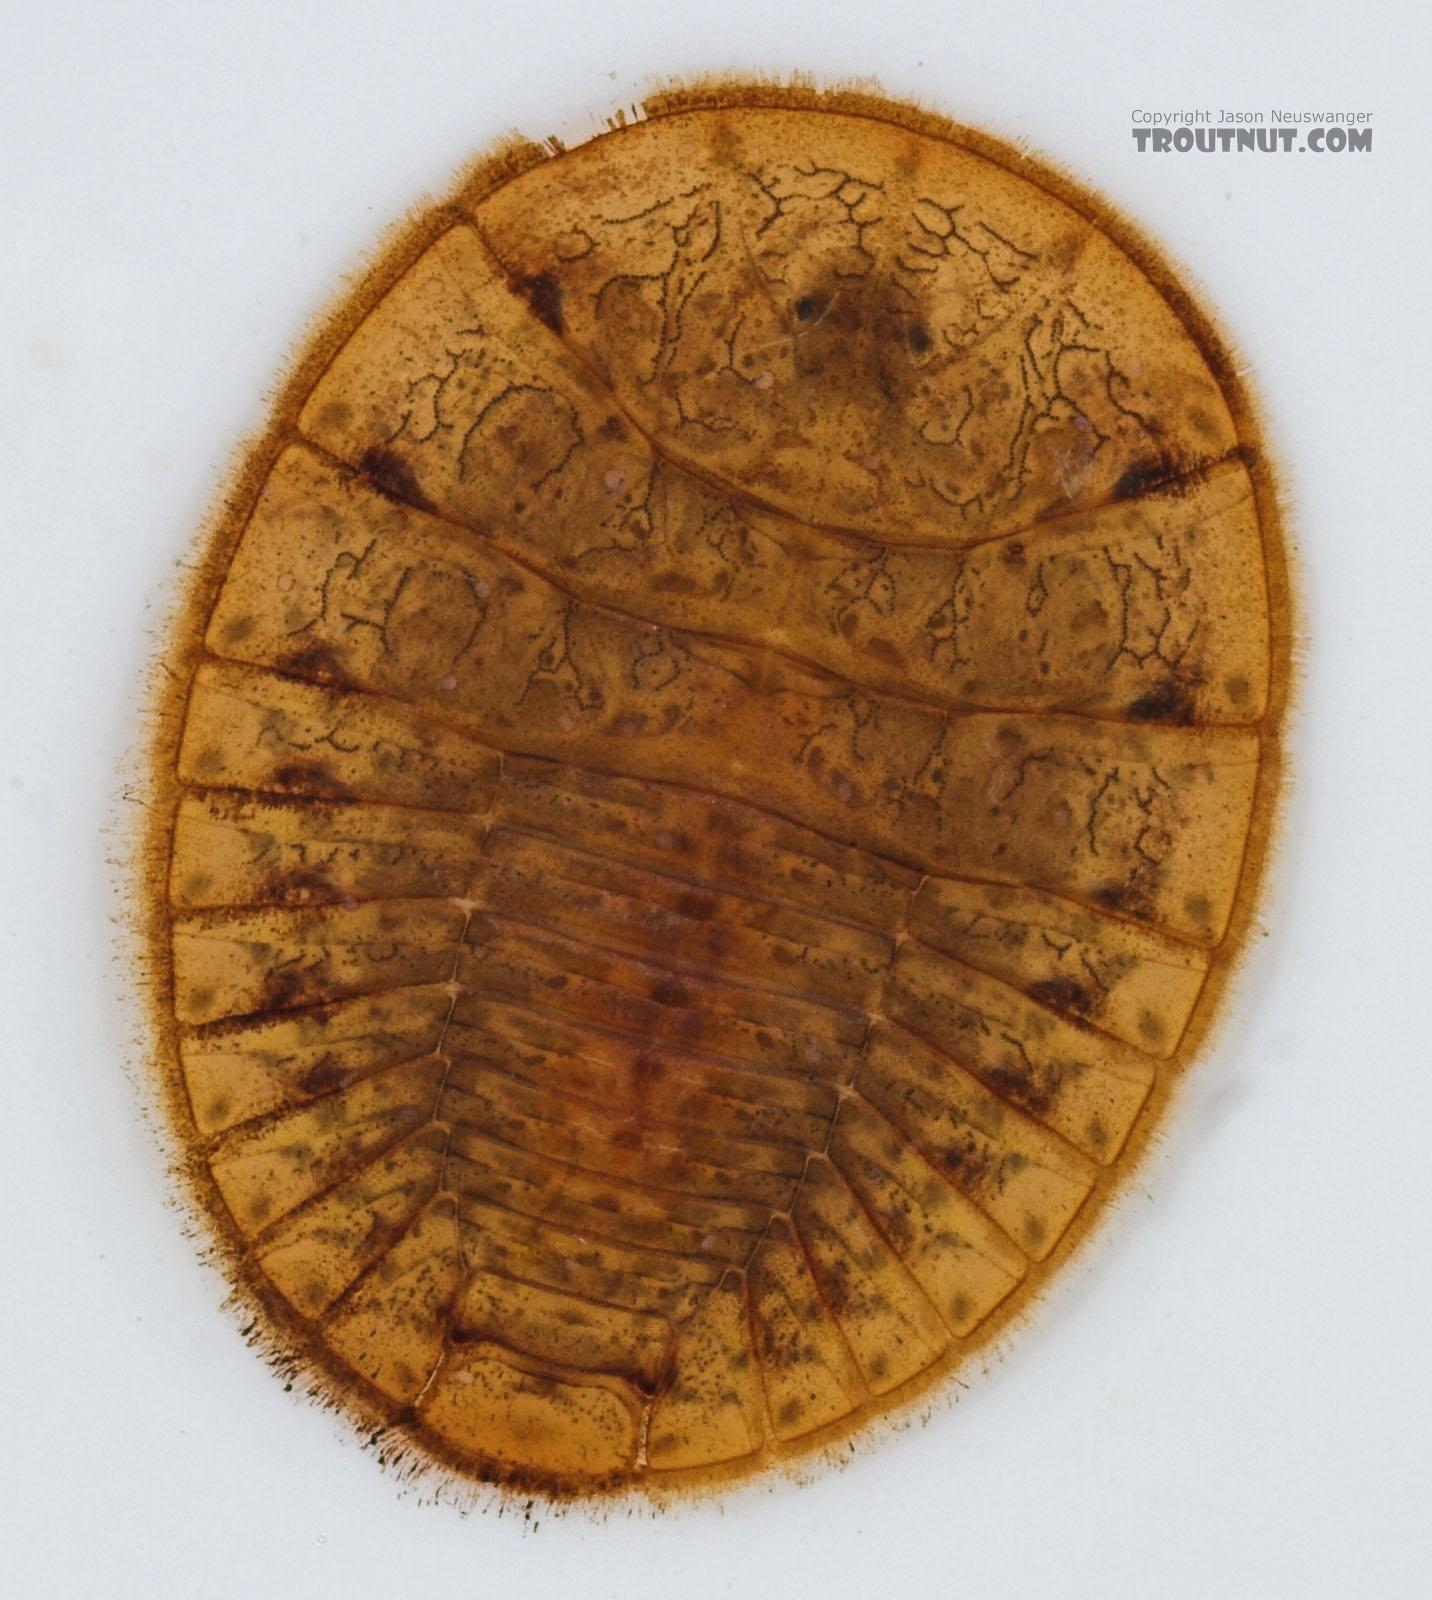 Psephenus (Water Pennies) Beetle Larva from Fall Creek in New York